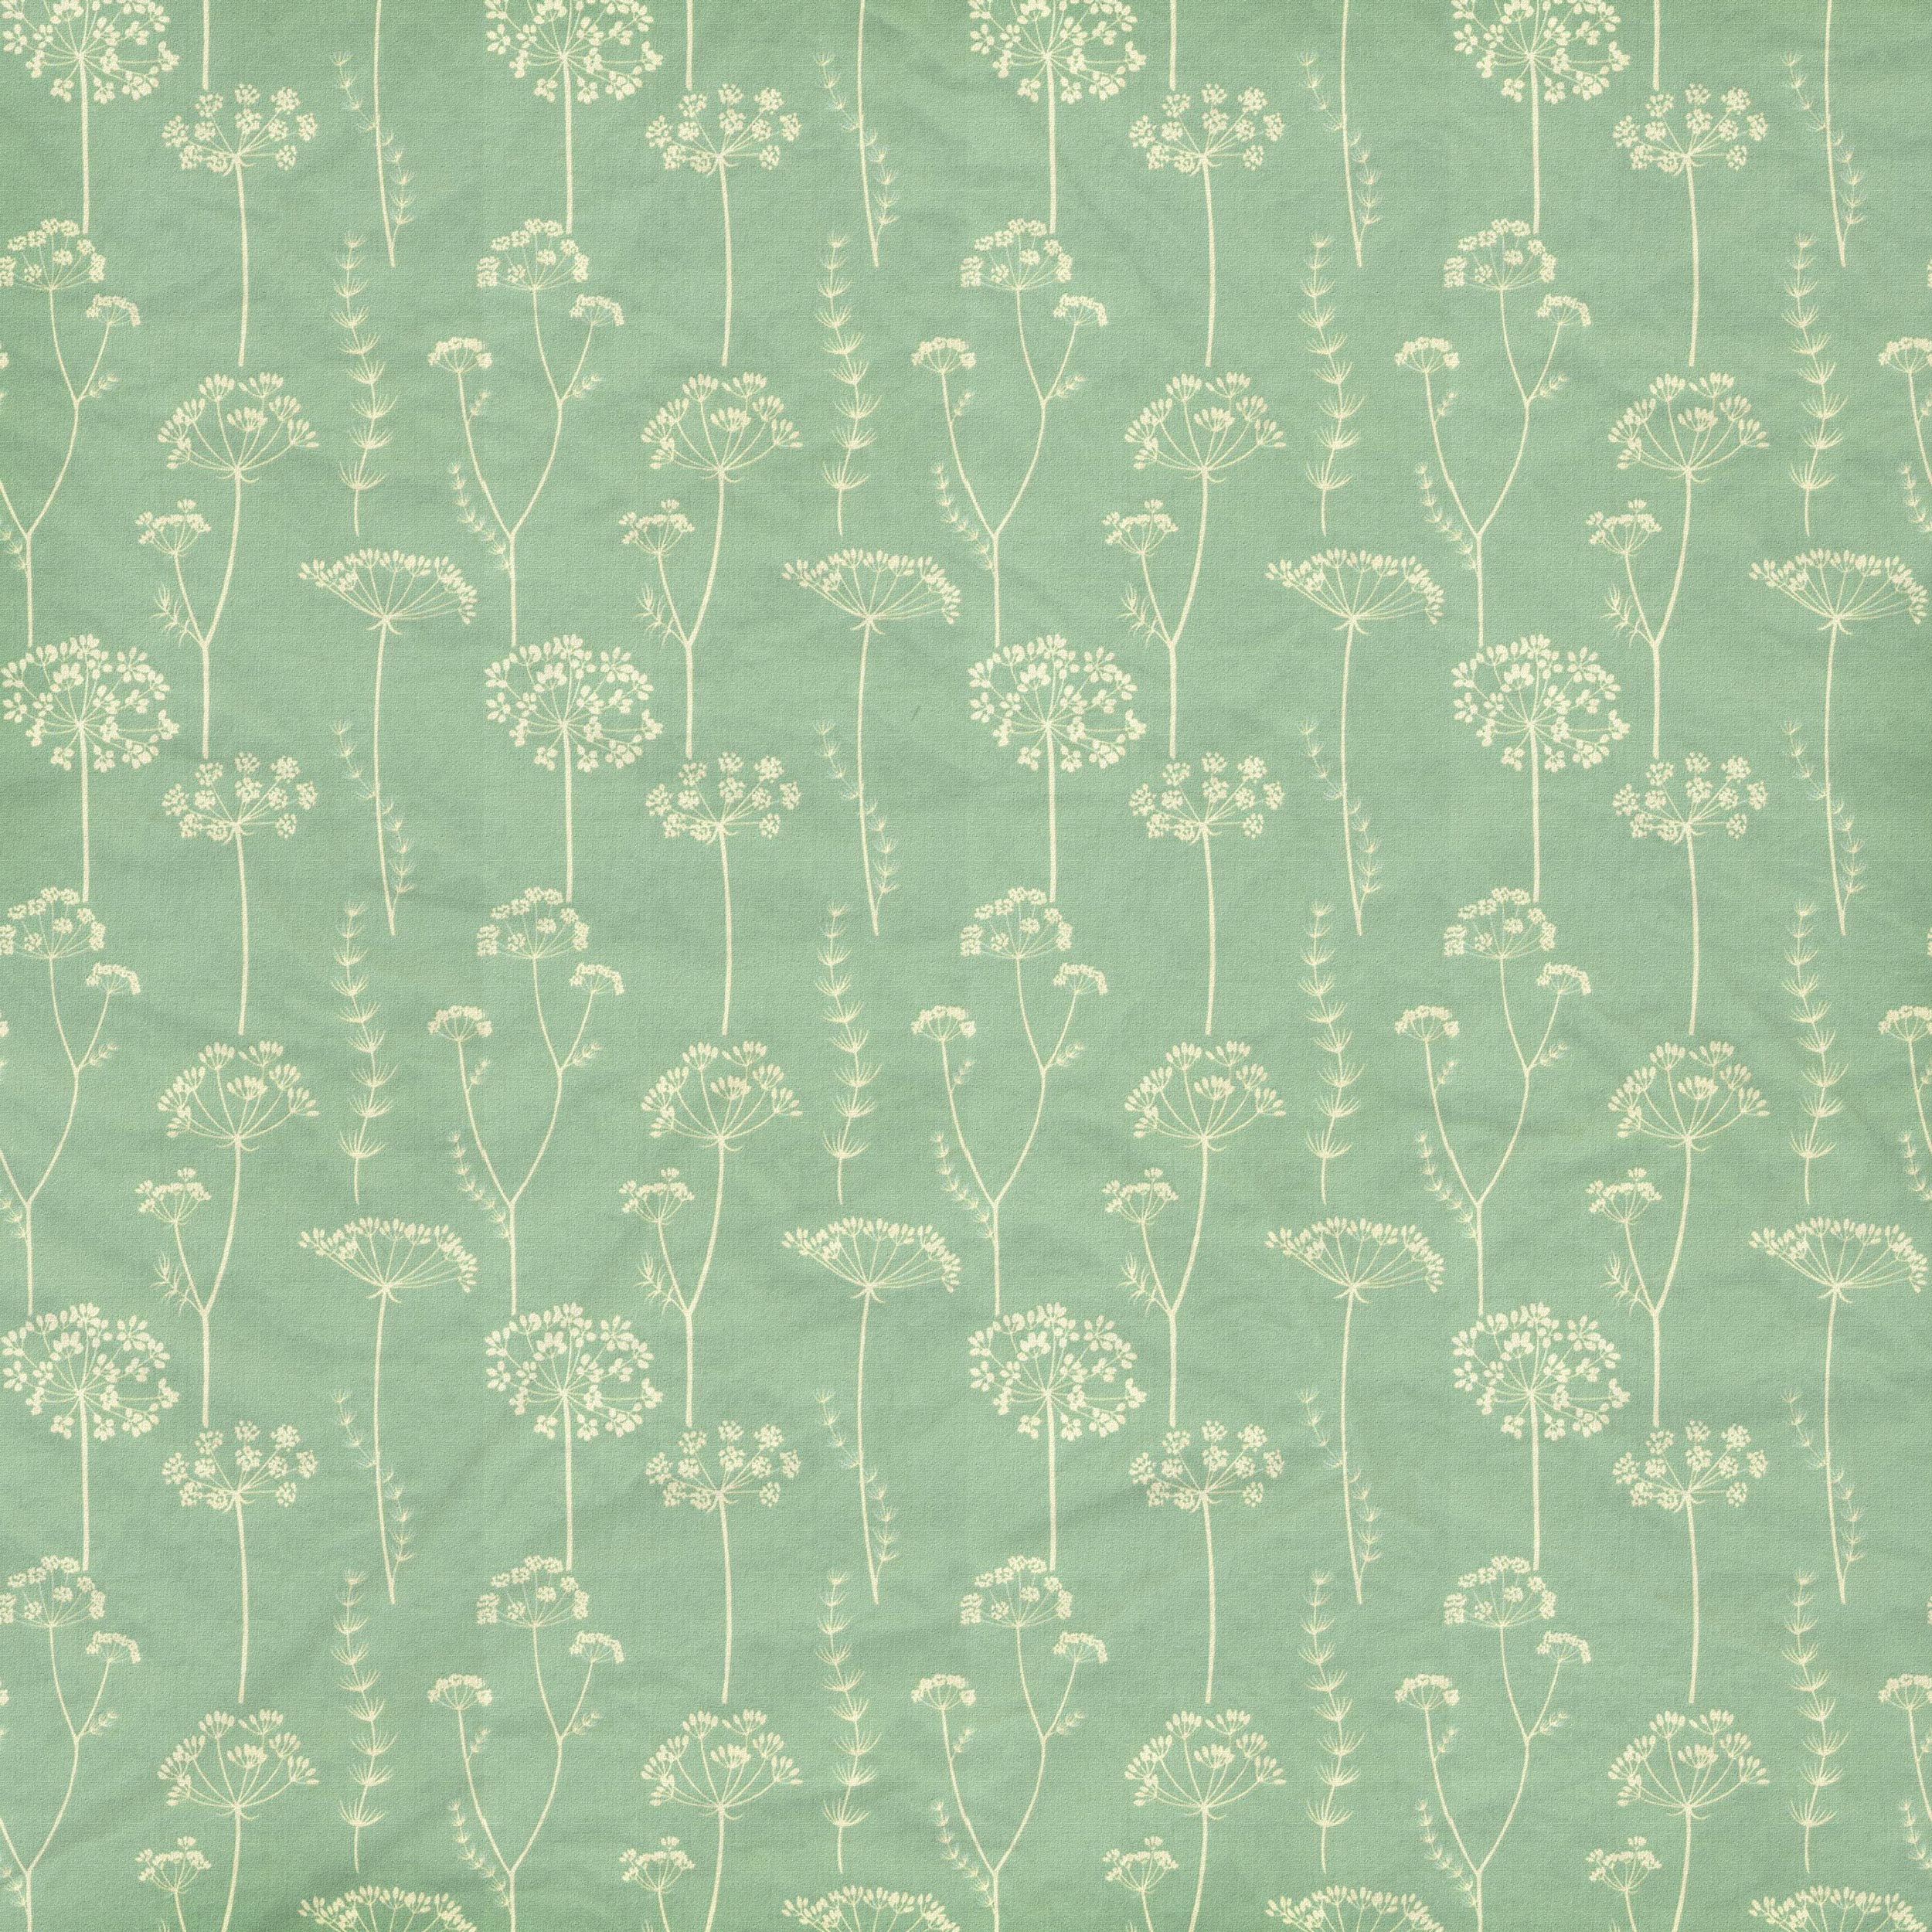 緑色の花のイラスト フリー素材 背景 壁紙no 177 青緑 布生地 シワ10